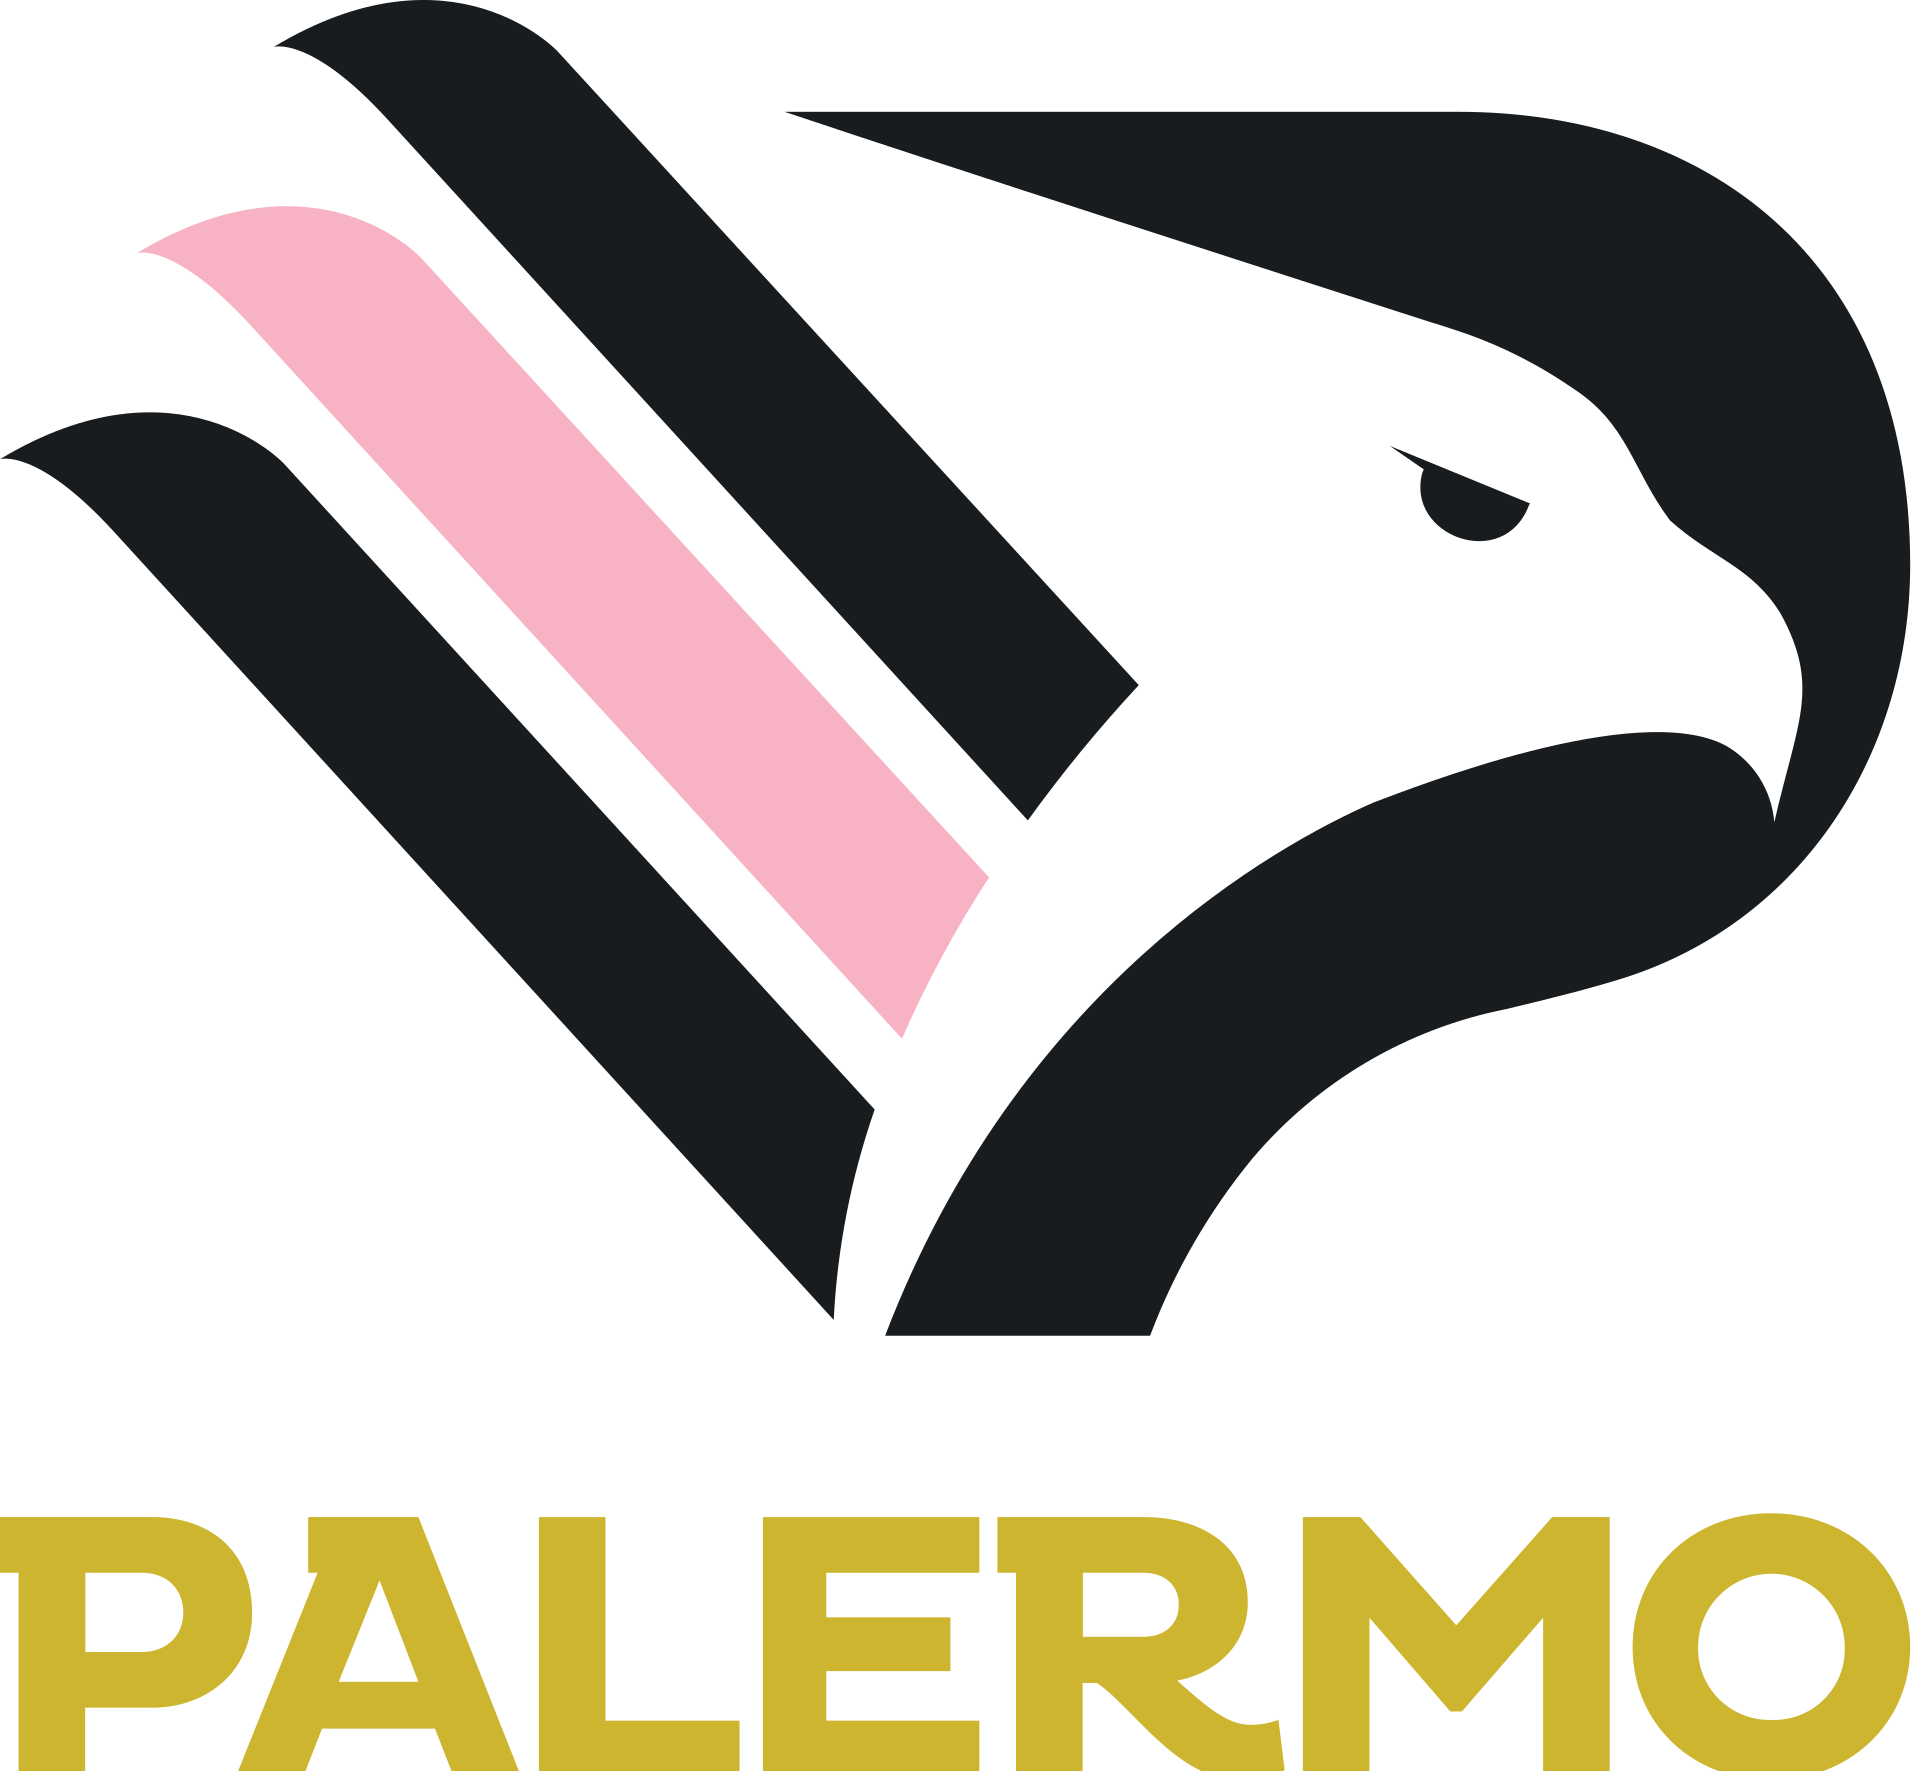 Palermo Football Club